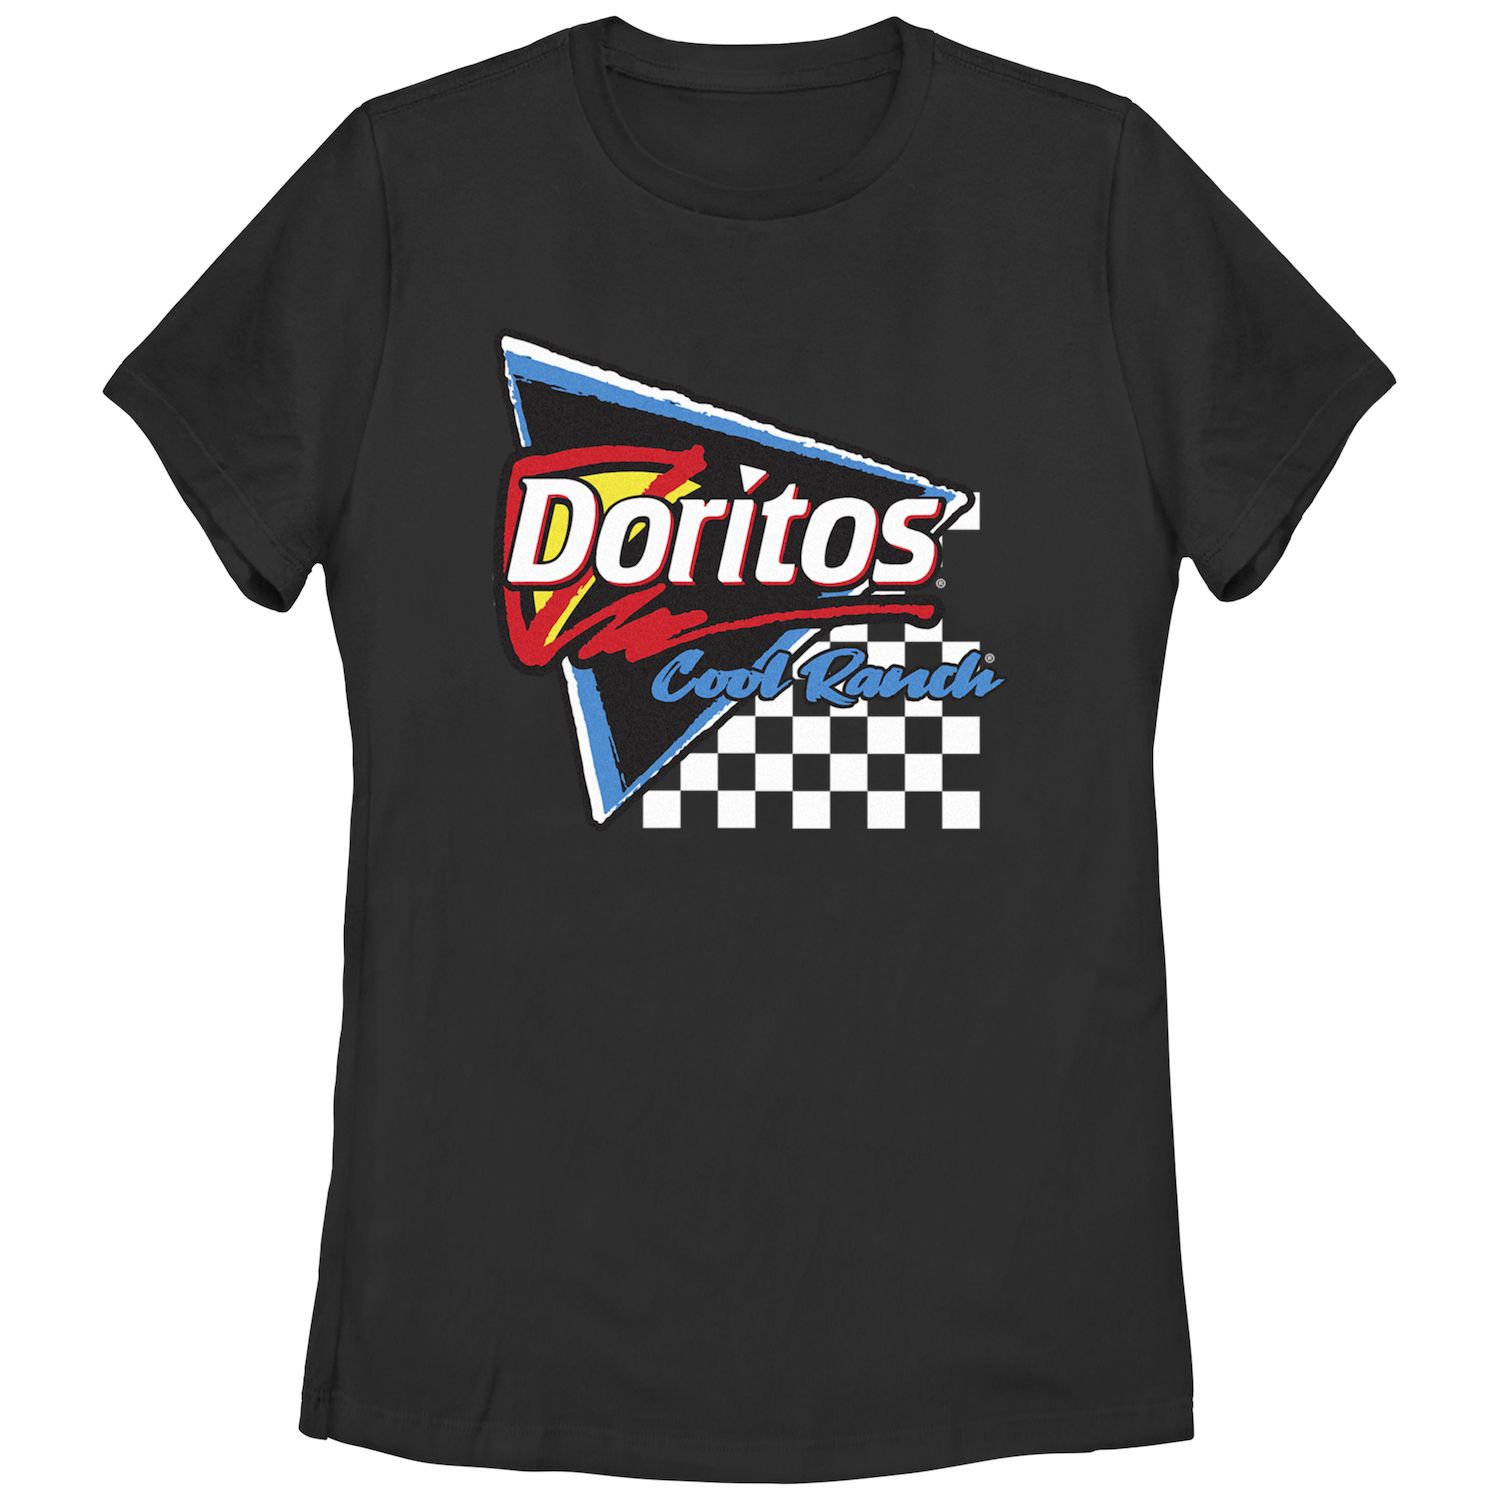 Детская футболка Doritos Cool Ranch Racing с треугольным рисунком и флагом Doritos детская футболка больших размеров doritos sunset в стиле 80 х с v образным вырезом и графикой doritos